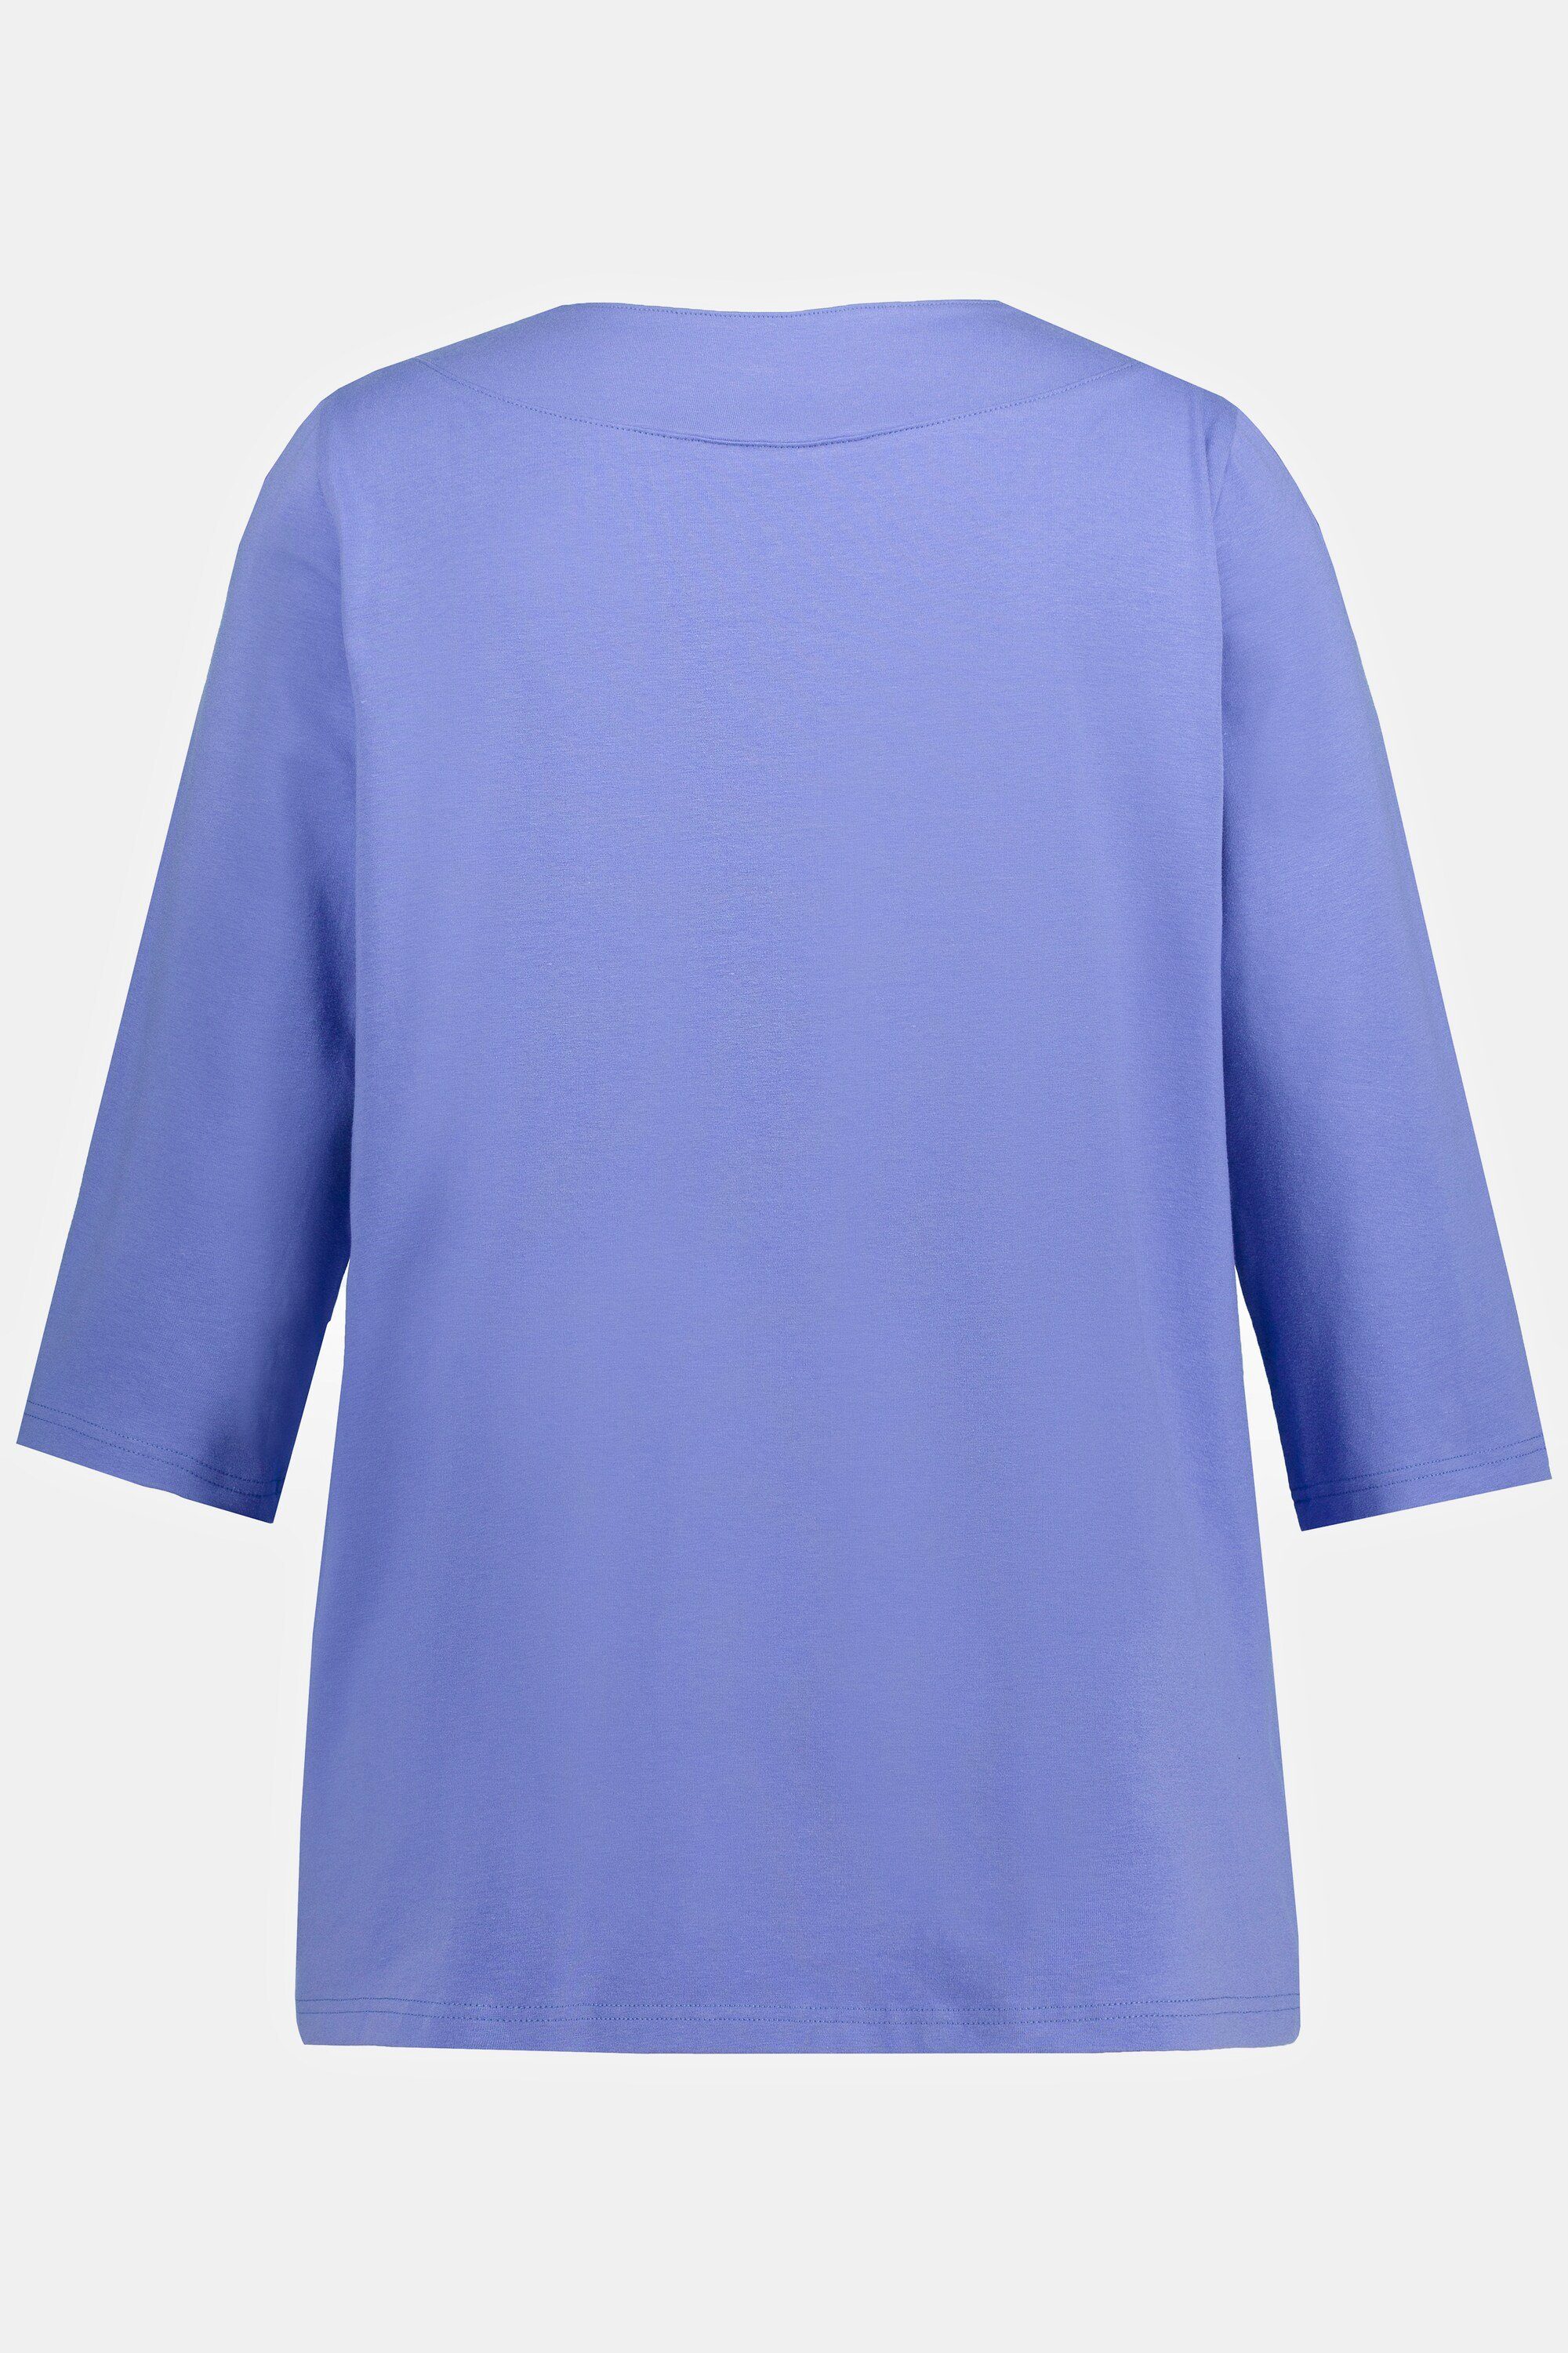 T-Shirt Schulter lavendelblau V-Ausschnitt ausgeschnittene Popken Ulla Longsleeve